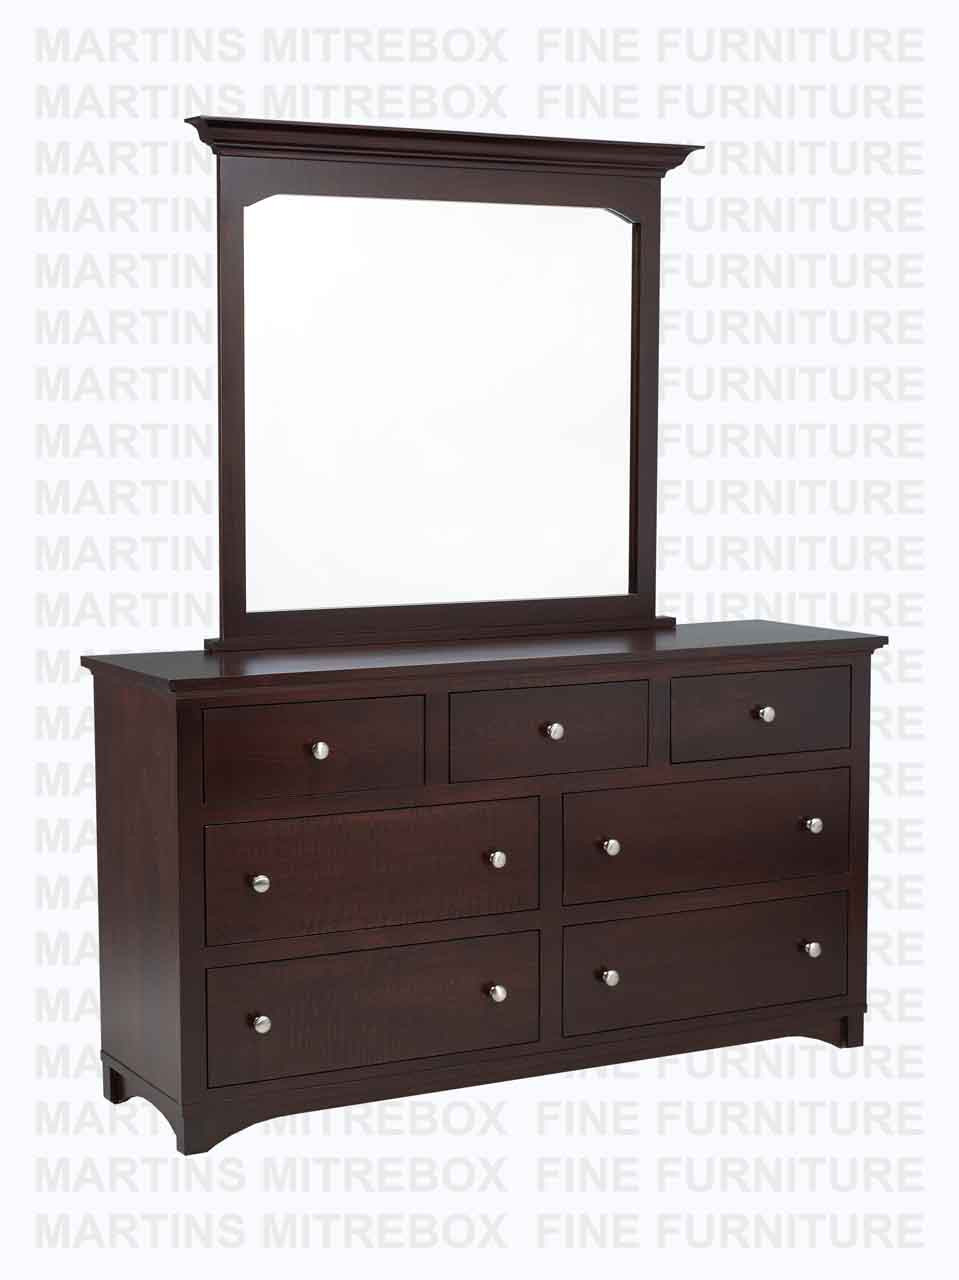 Wormy Maple Montana Dresser 7 Drawers 18''D x 36''H x 64''W